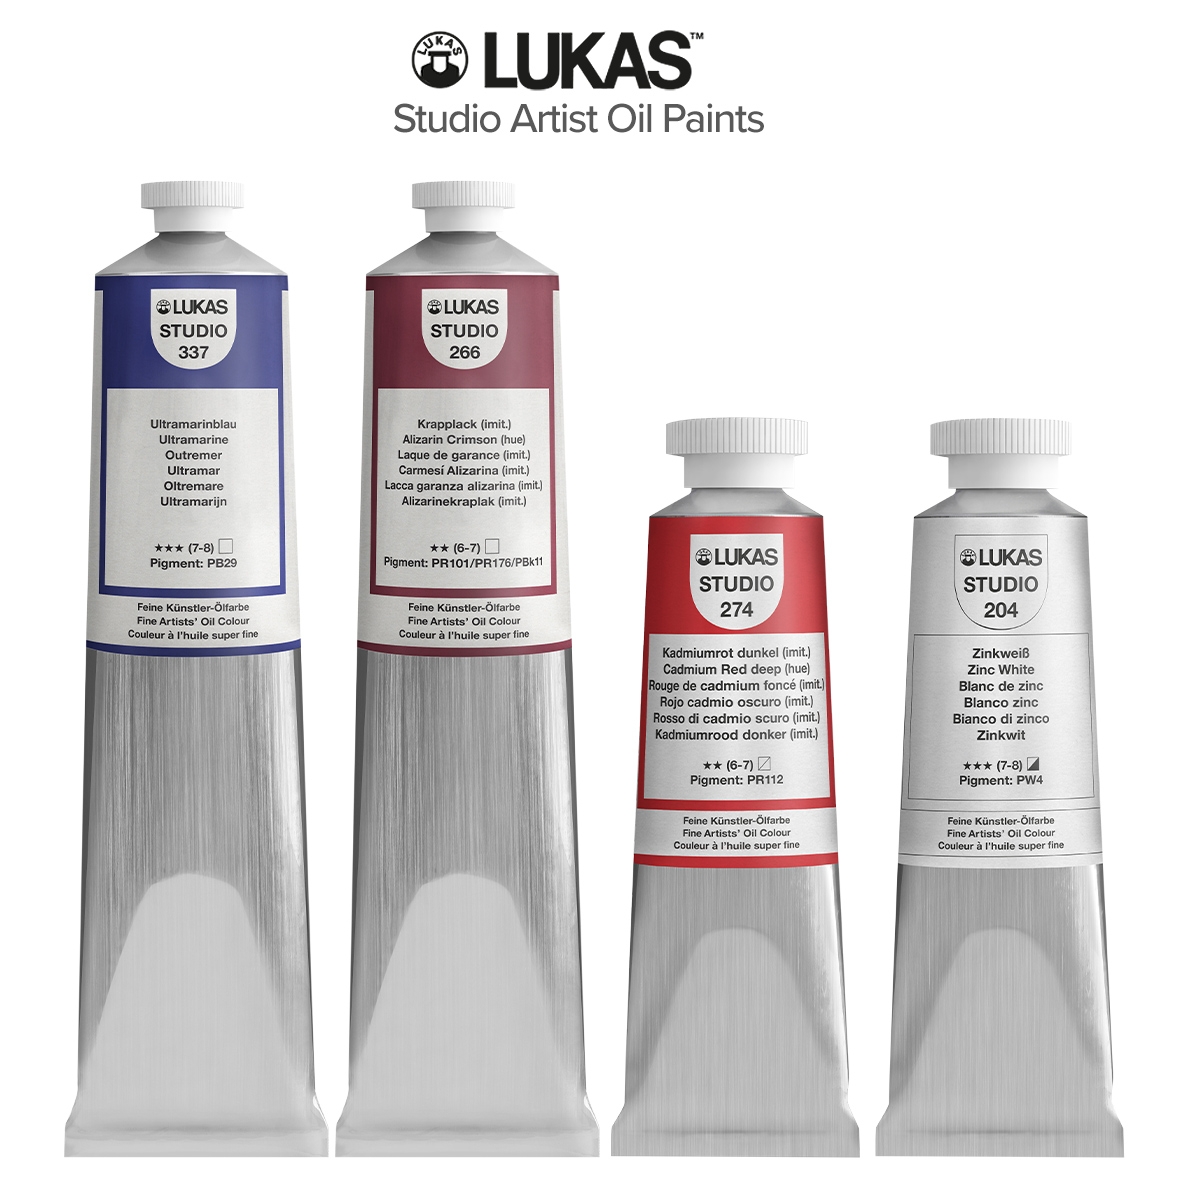 LUKAS Studio Artist Oil Color Paints 37ml & 200ml Tubes